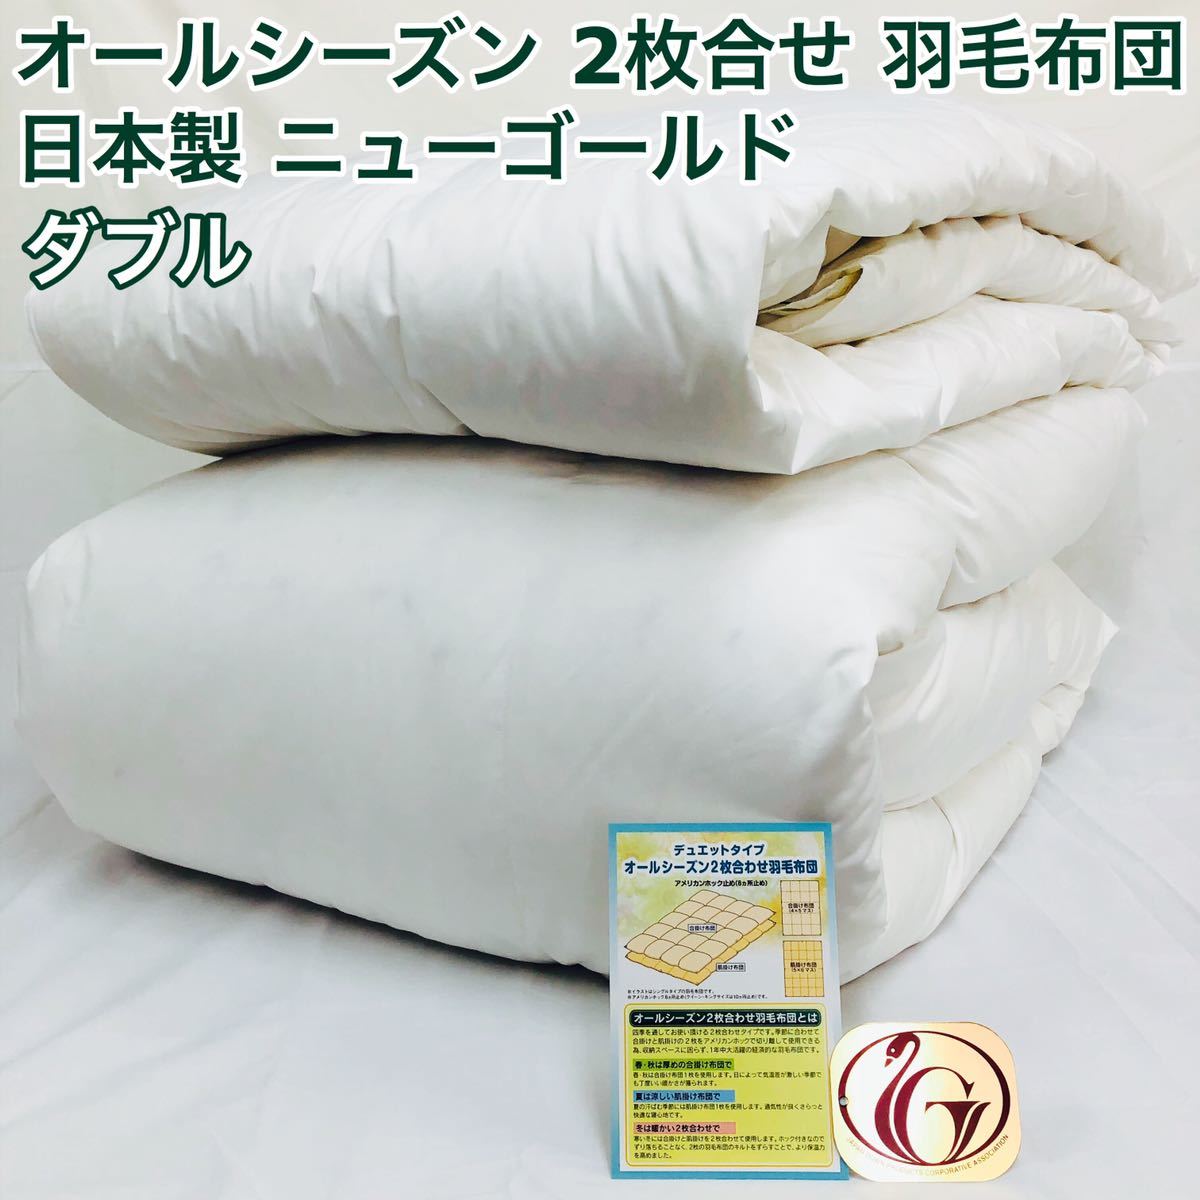 2枚合わせ 羽毛布団 ダブル ニューゴールド 白色 日本製 190×210cm